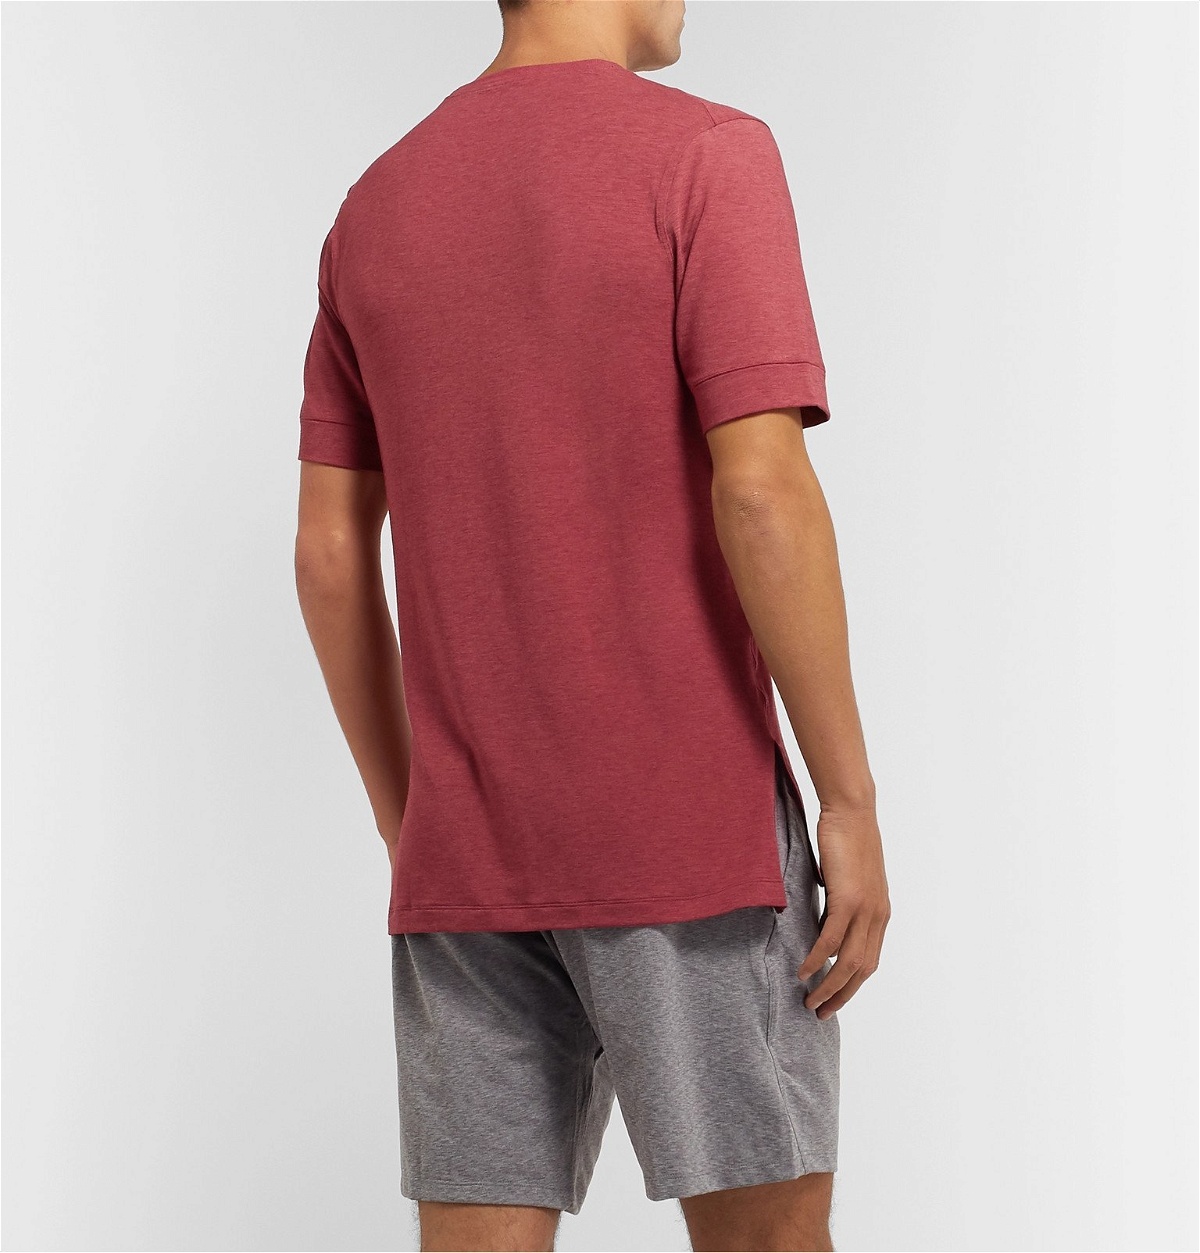 Nike Training - Slim-Fit Dri-FIT Yoga T-Shirt - Red Nike Training